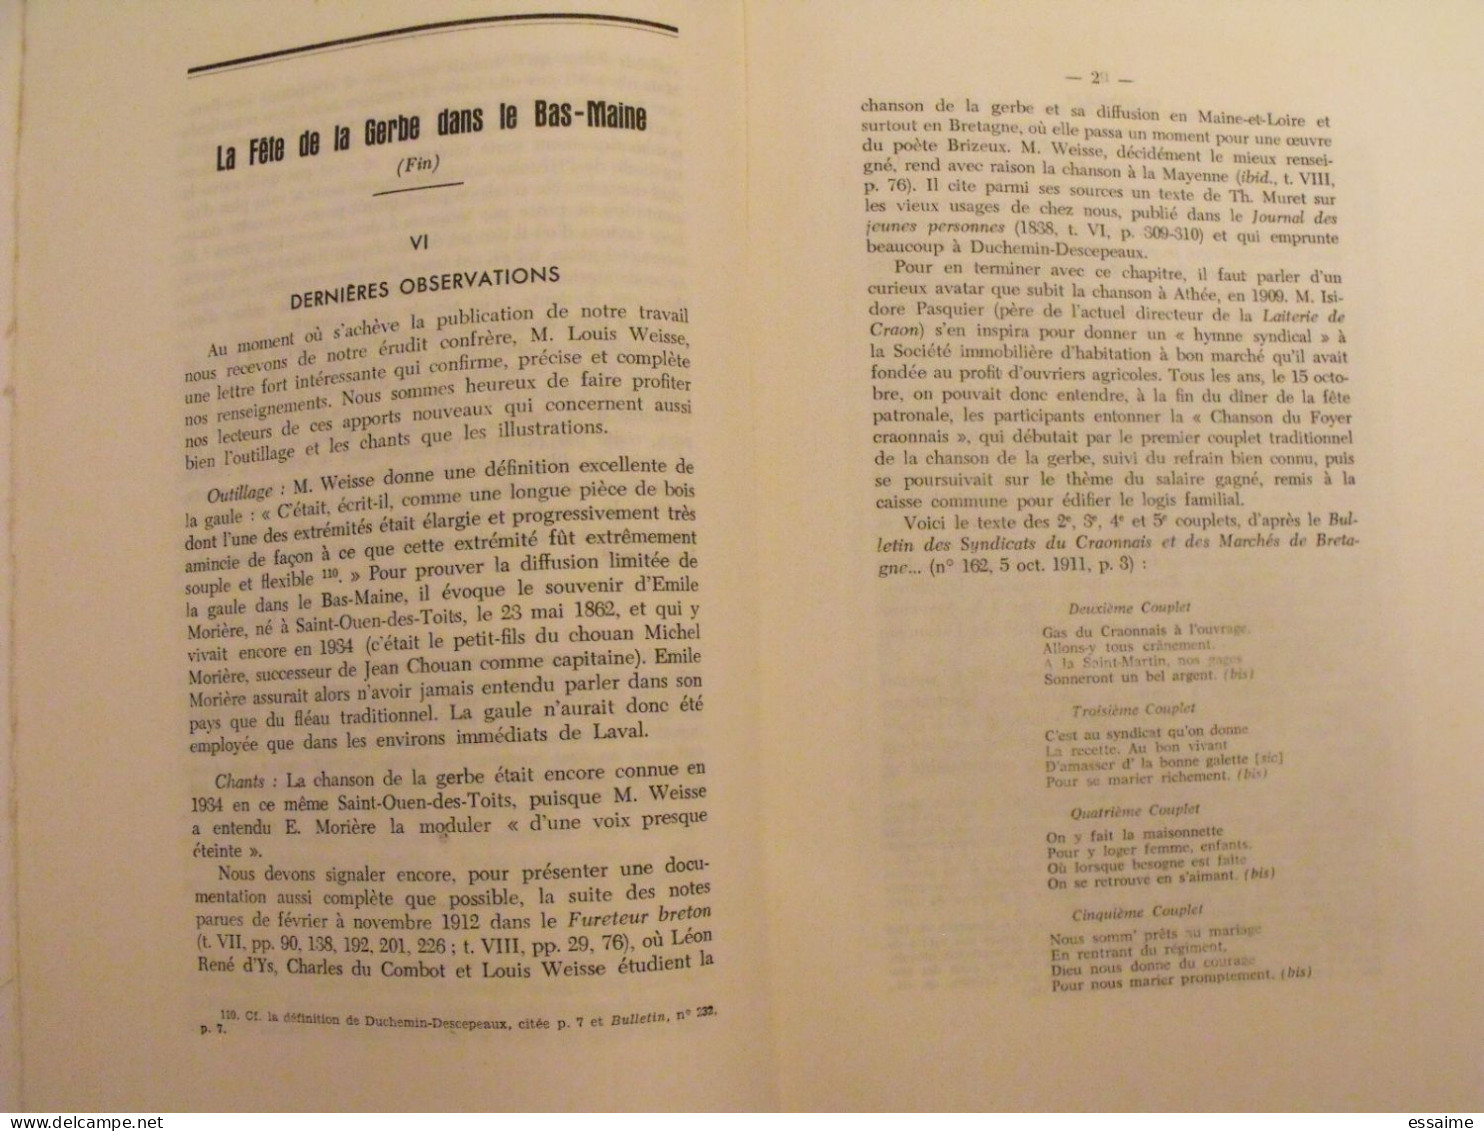 bulletin historique et archéologique de la Mayenne. 1962, tome LXXI-235. Laval Chateau-Gontier. Goupil.